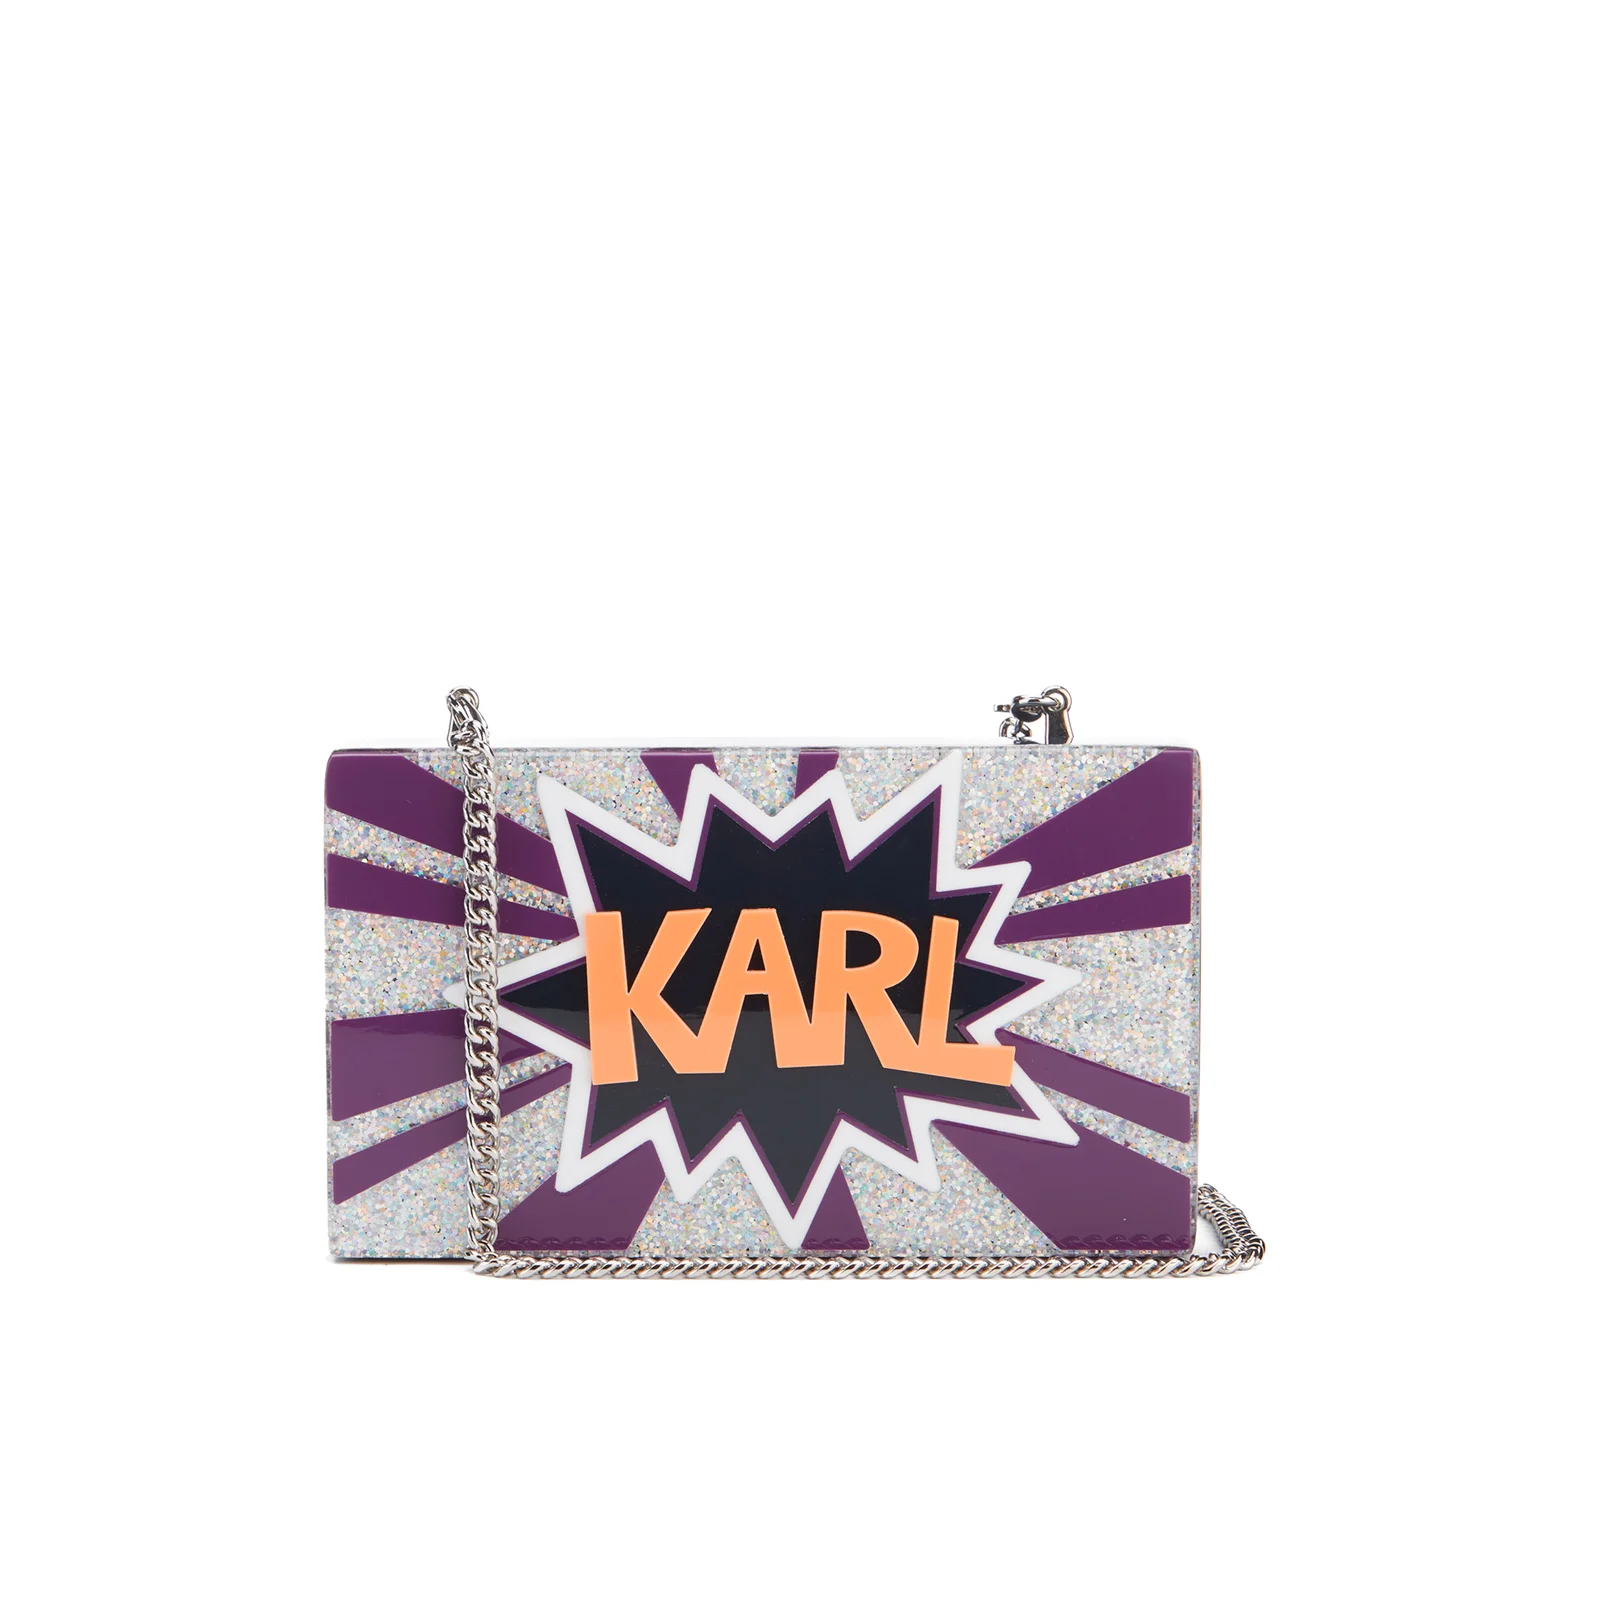 Karl Lagerfeld Women's K/Pop Minaudiere Clutch Bag - Dark Sapphire Image 1